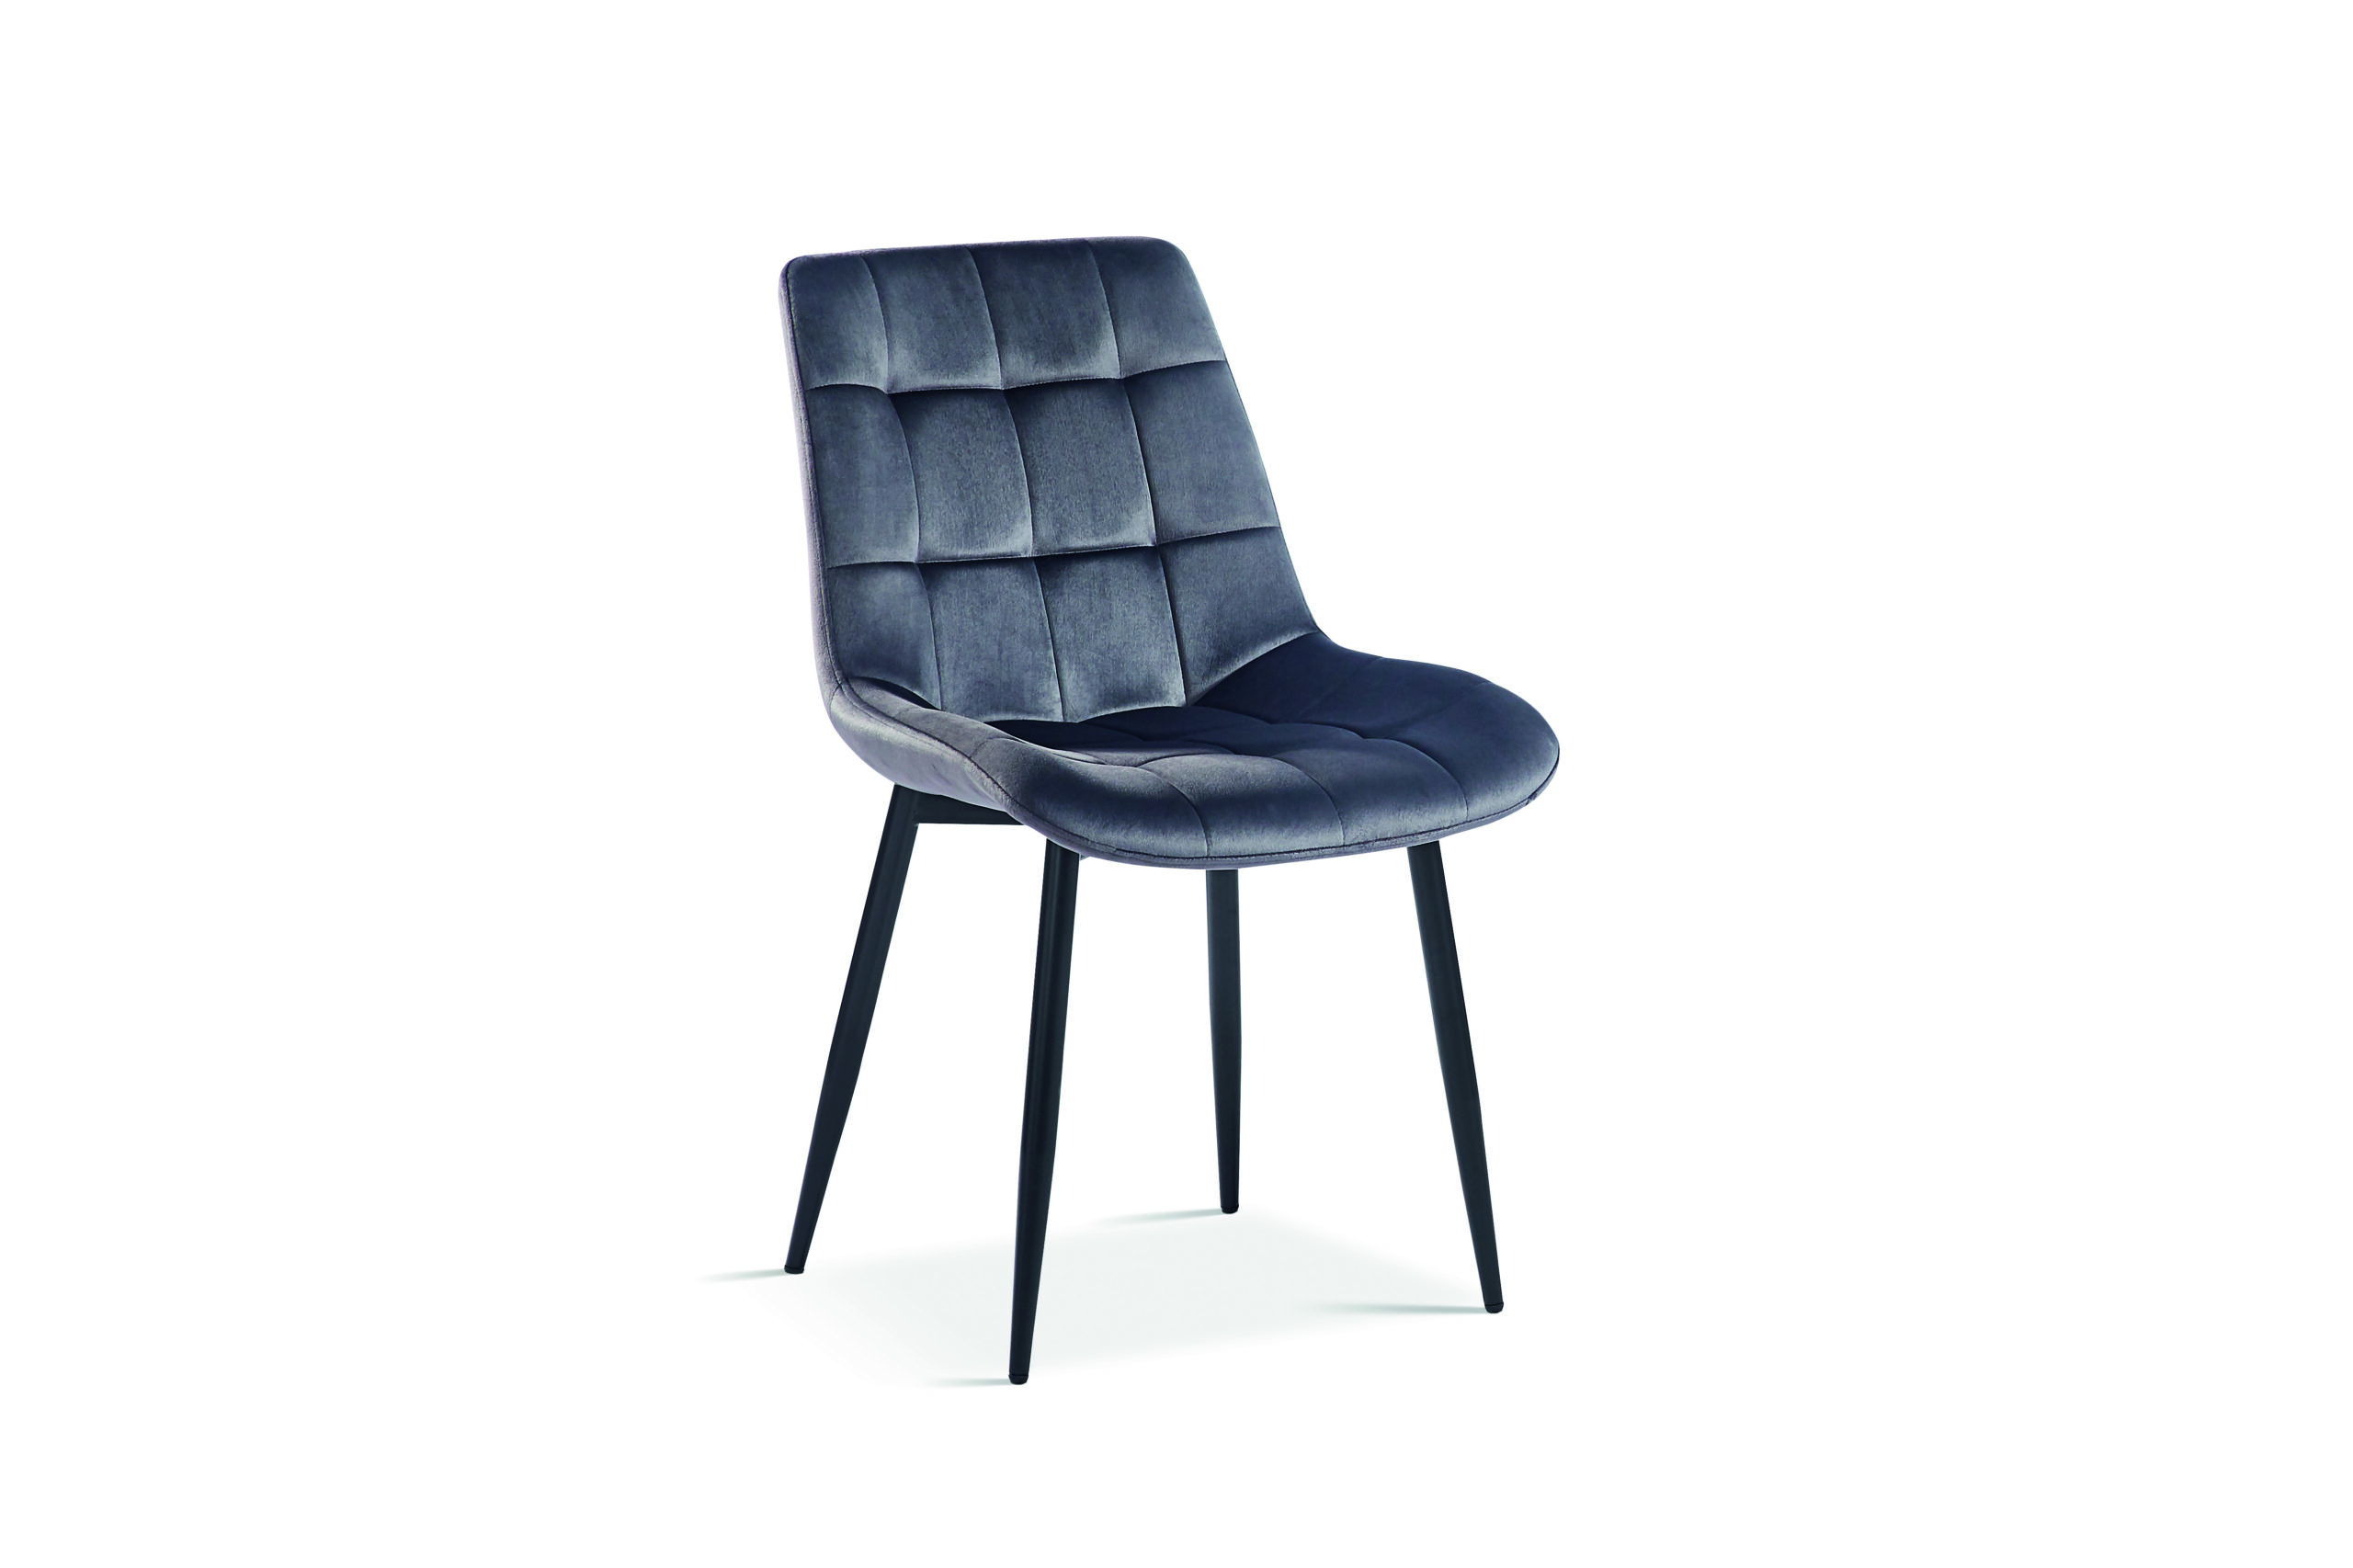 Chaise grise taupe profil moderne confortable en velours pieds métal noirs